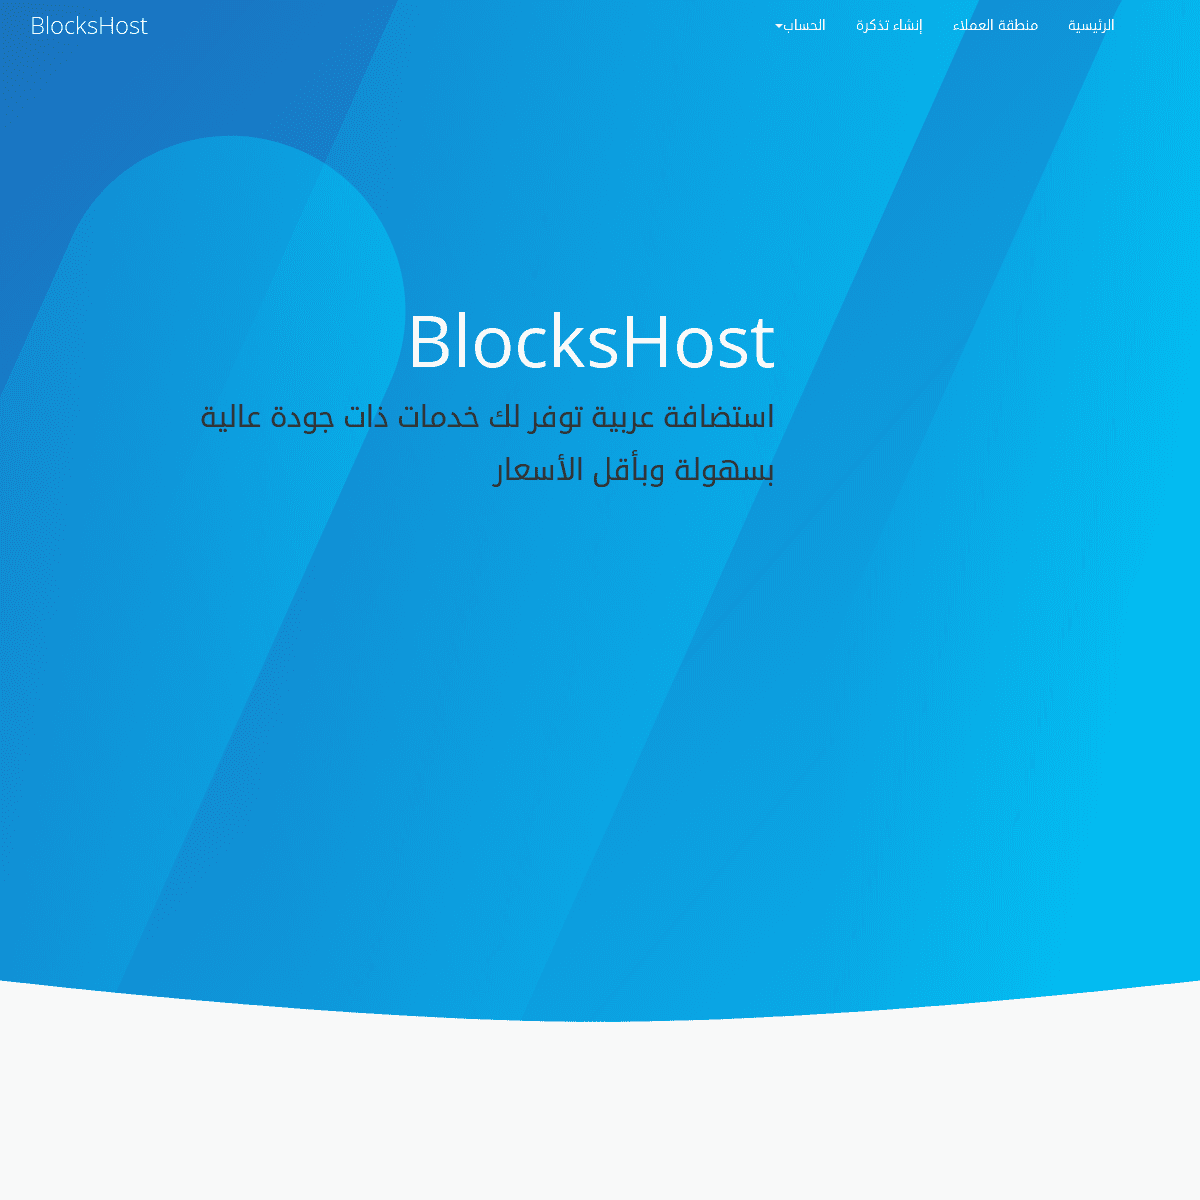 A complete backup of blockshost.com